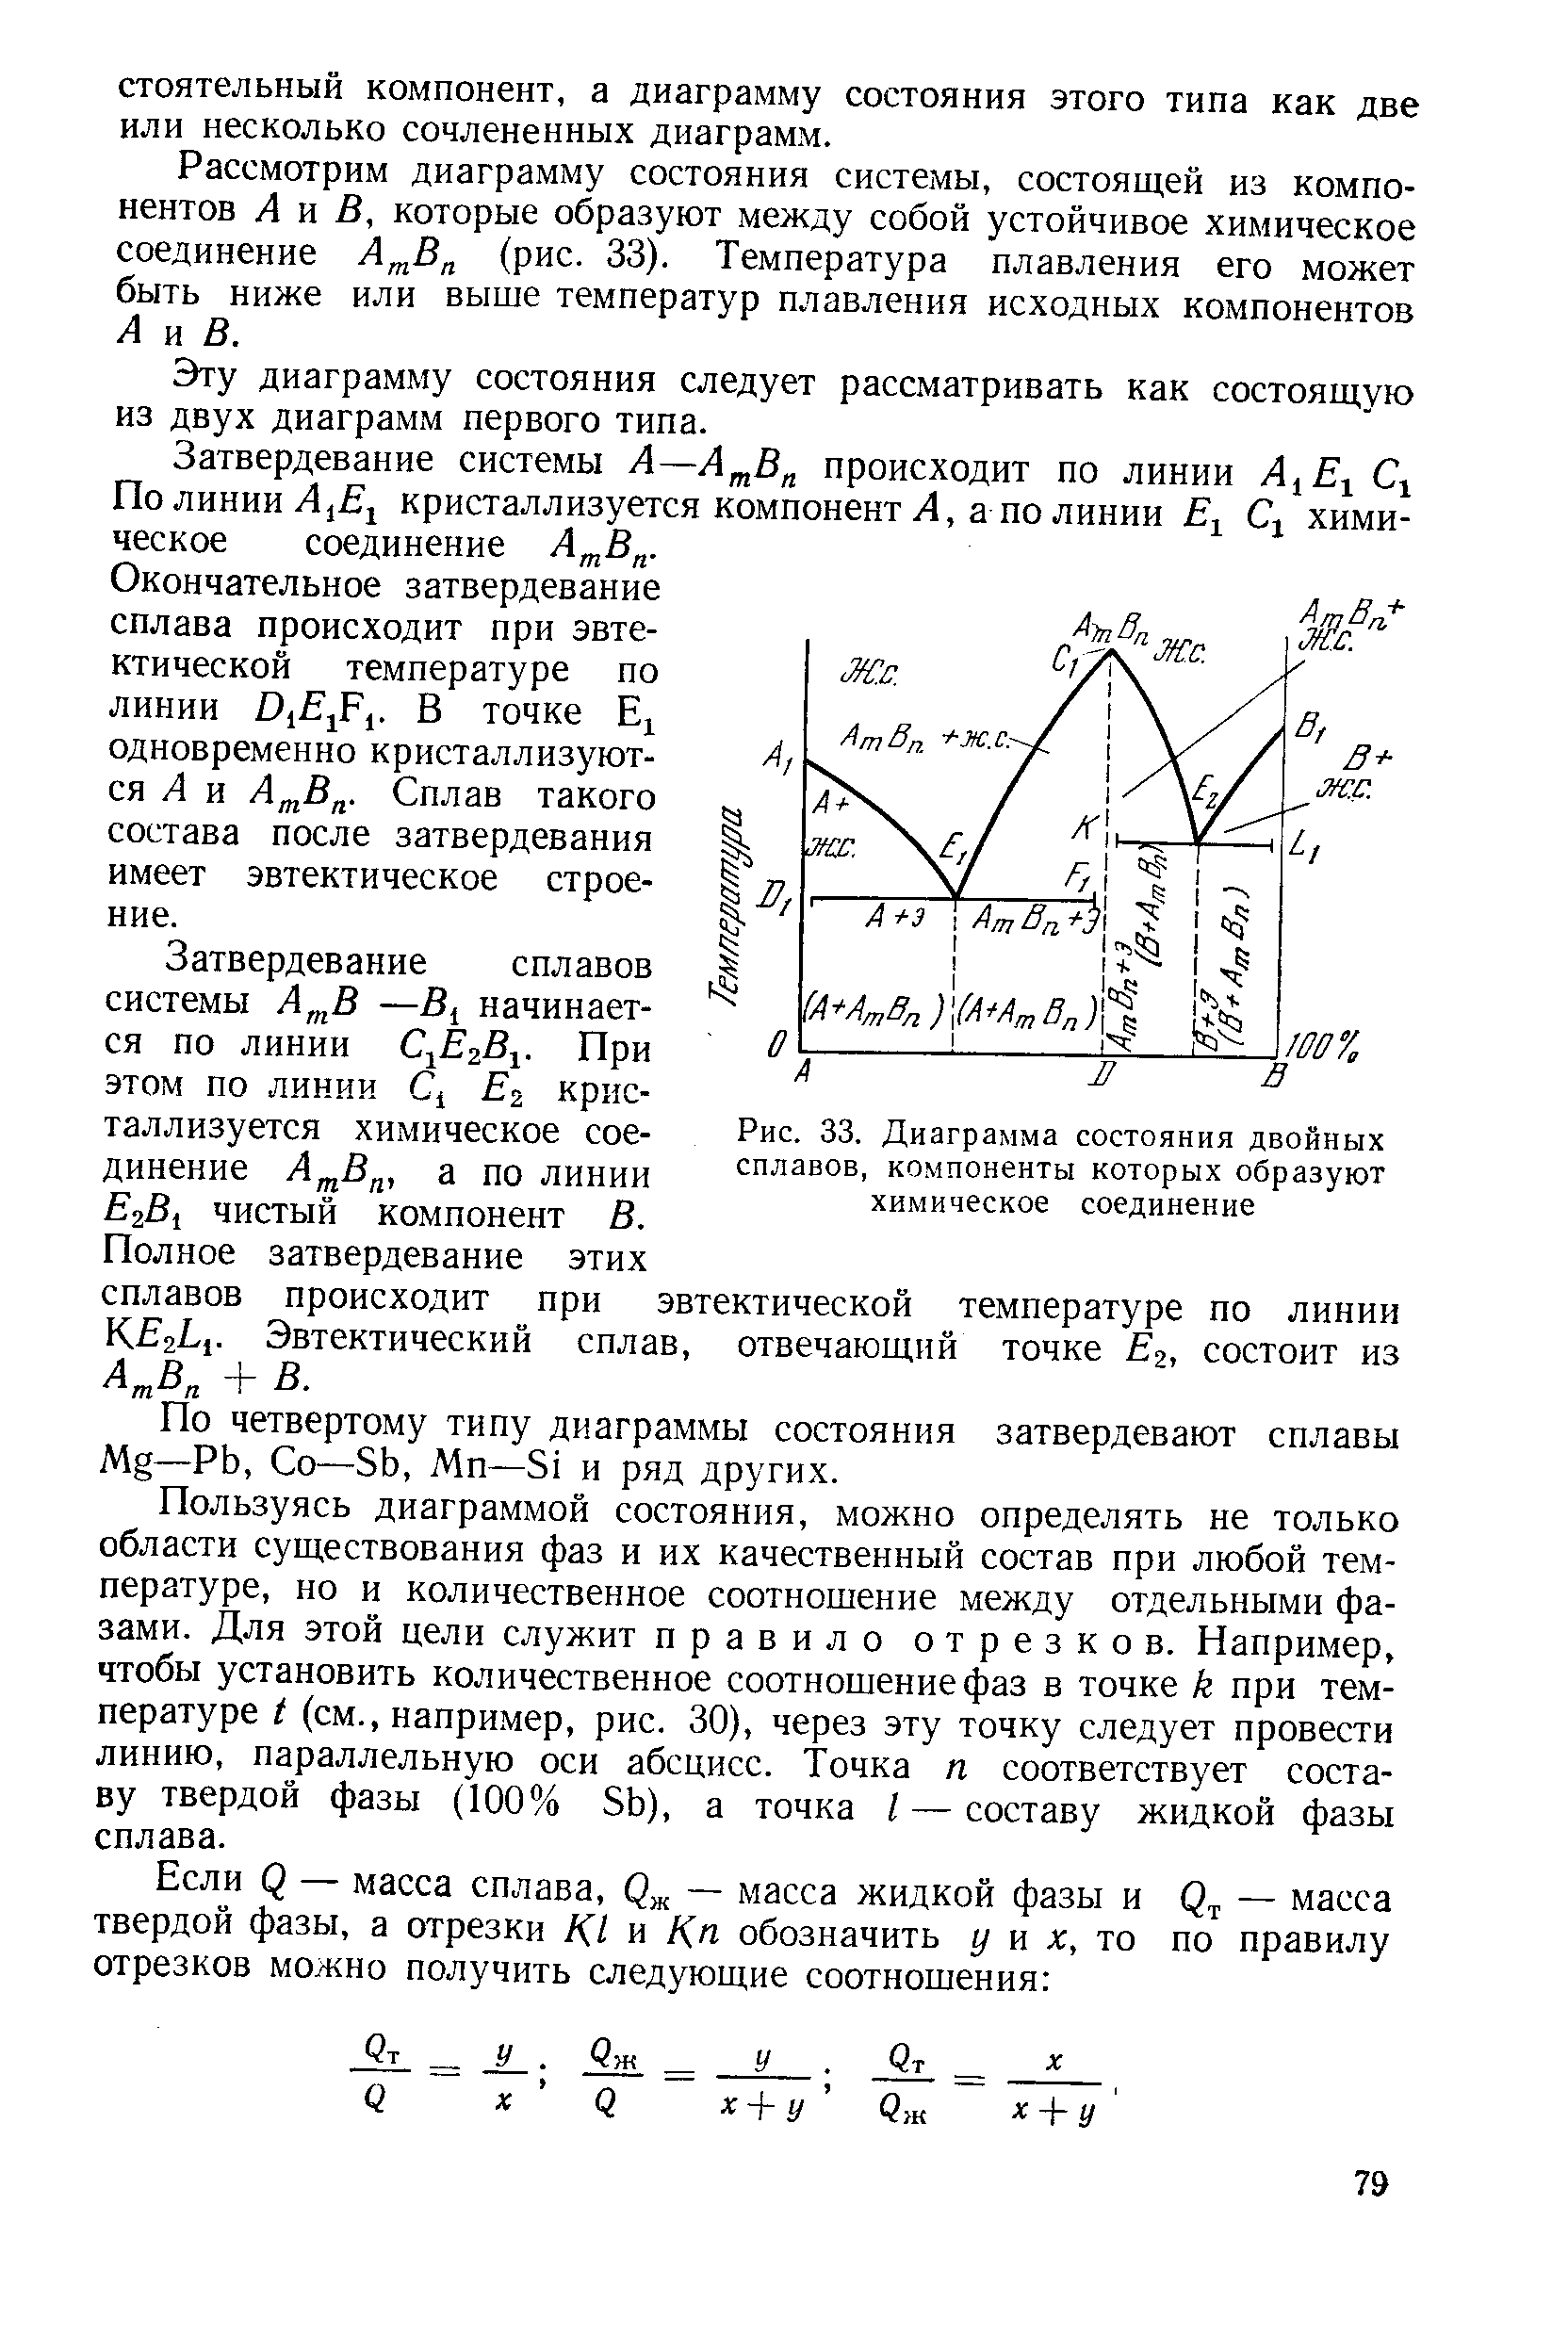 Рис. 33, Диаграмма состояния двойных сплавов, компоненты которых образуют химическое соединение
